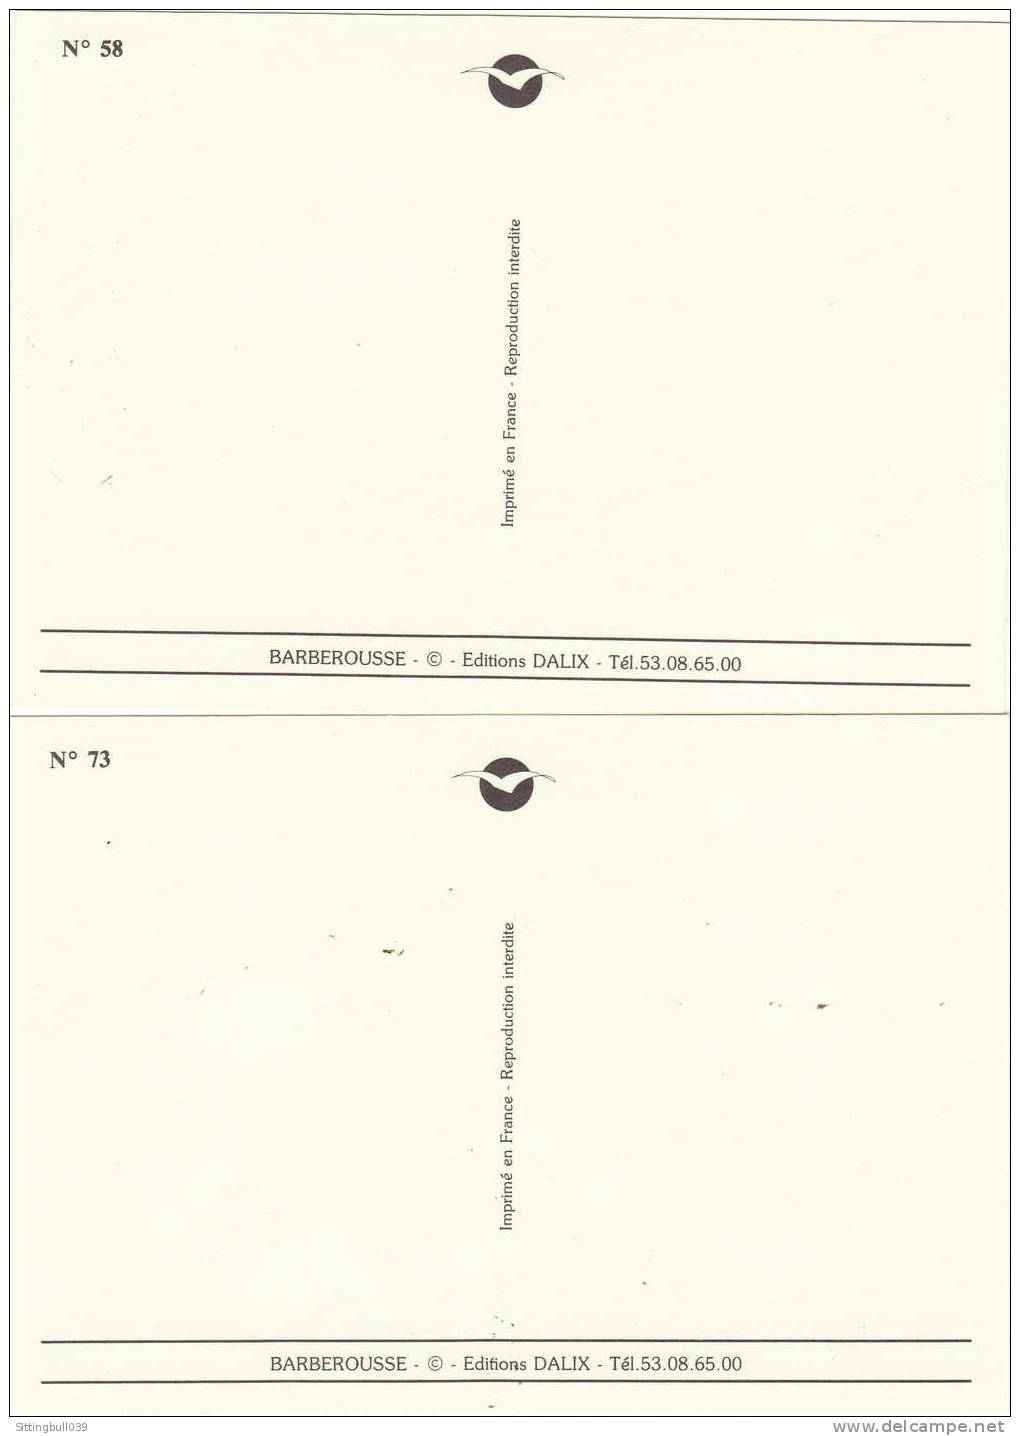 BARBEROUSSE. Série De 16 Cartes Postales Numérotées De 58 à 73. Editions Dalix. Années 90. - Barberousse